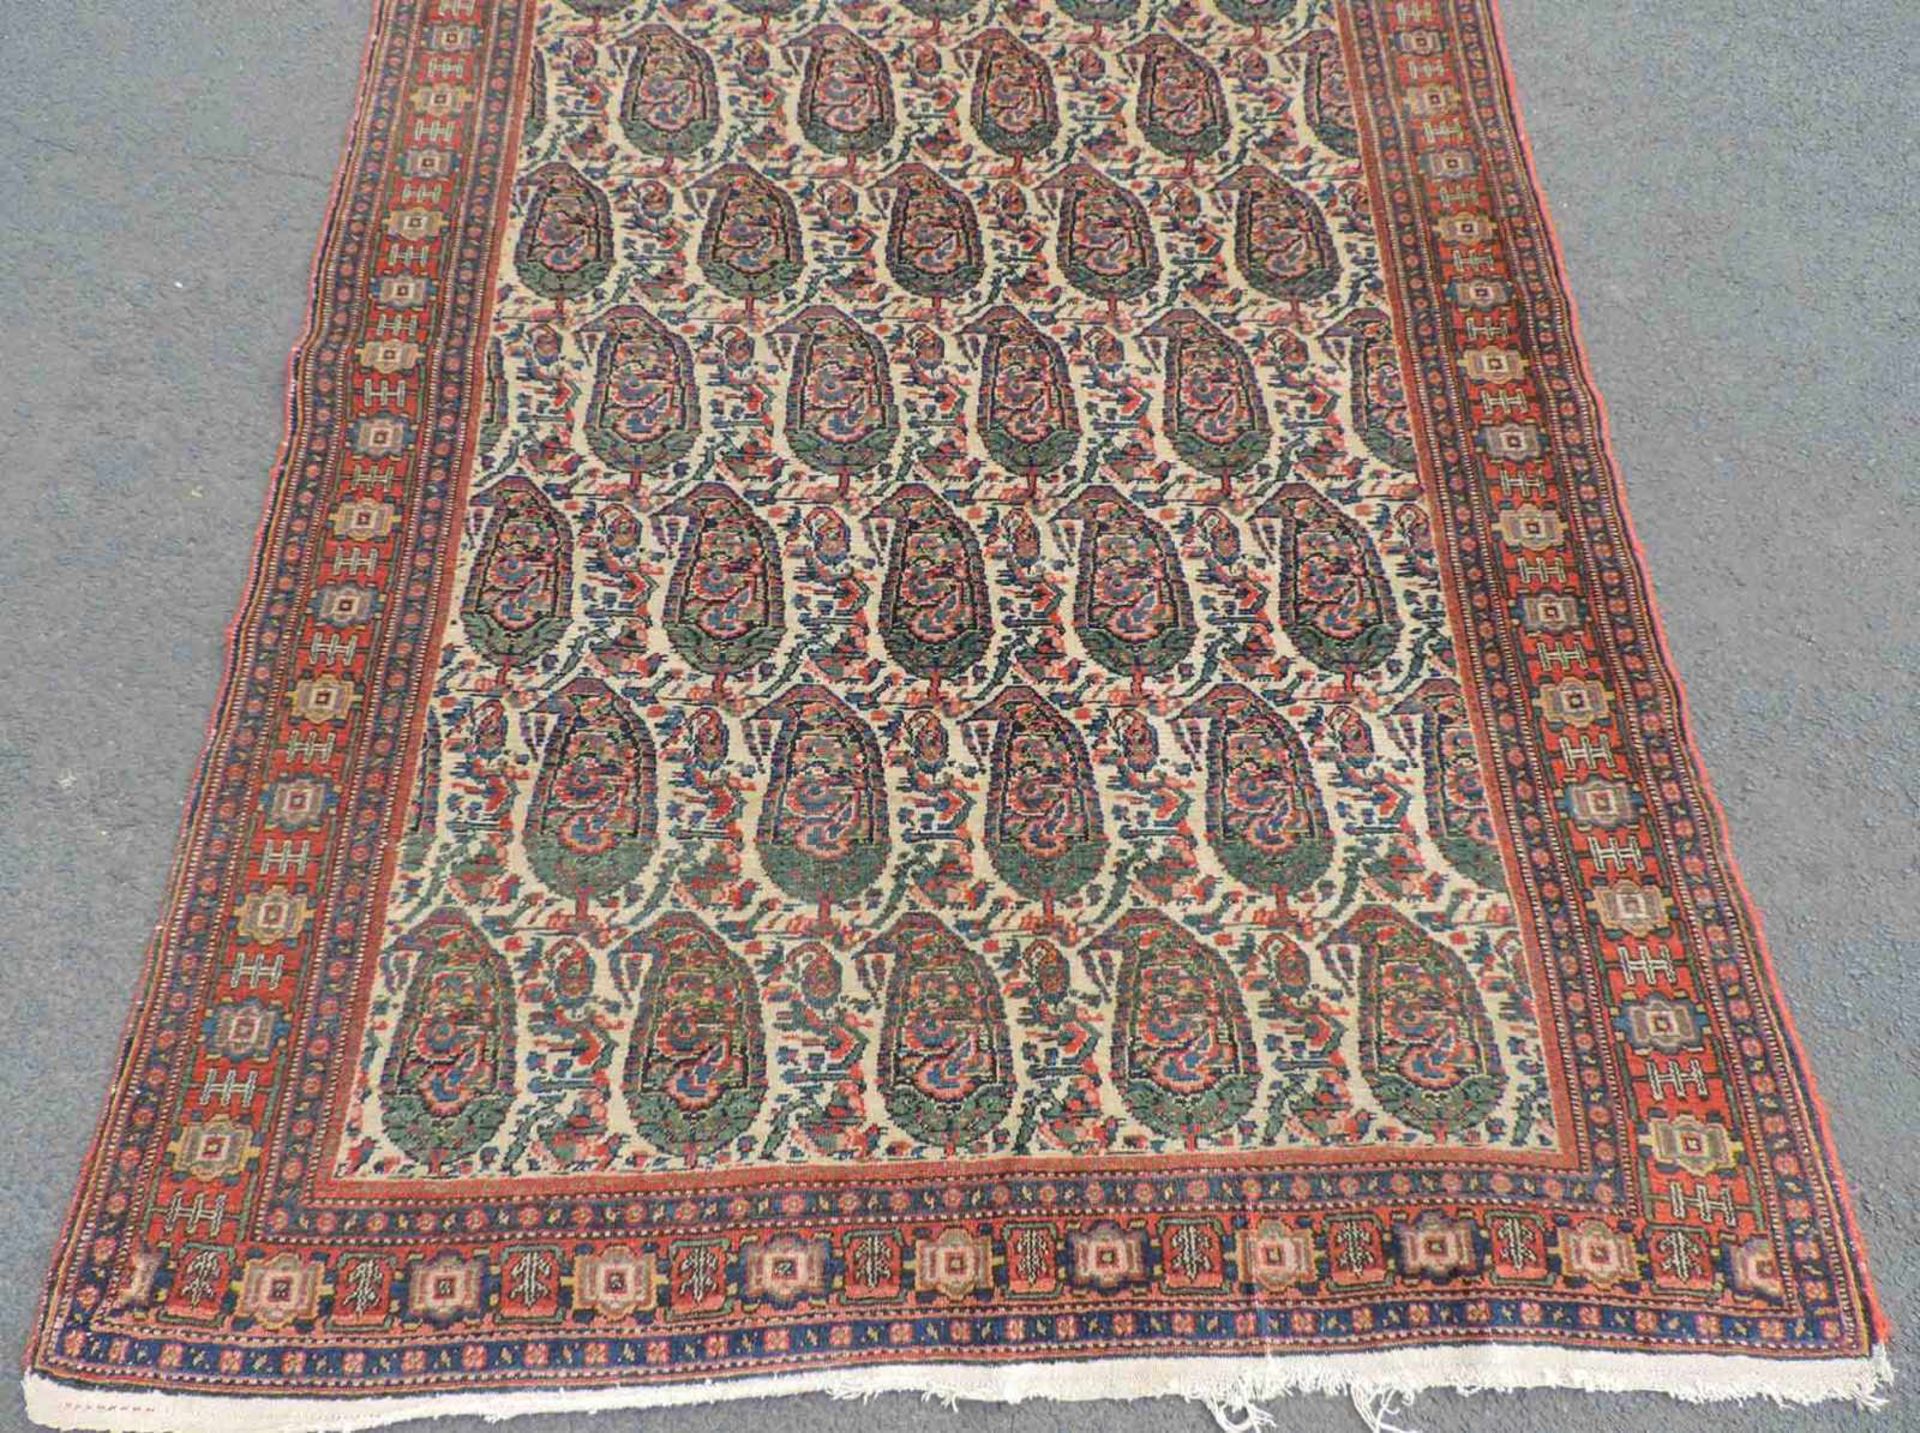 Senneh Dorfteppich. Iran. Antik. Um 1900. 196 cm x 136 cm. Handgeknüpft. Wolle auf Baumwolle. Senneh - Bild 2 aus 5